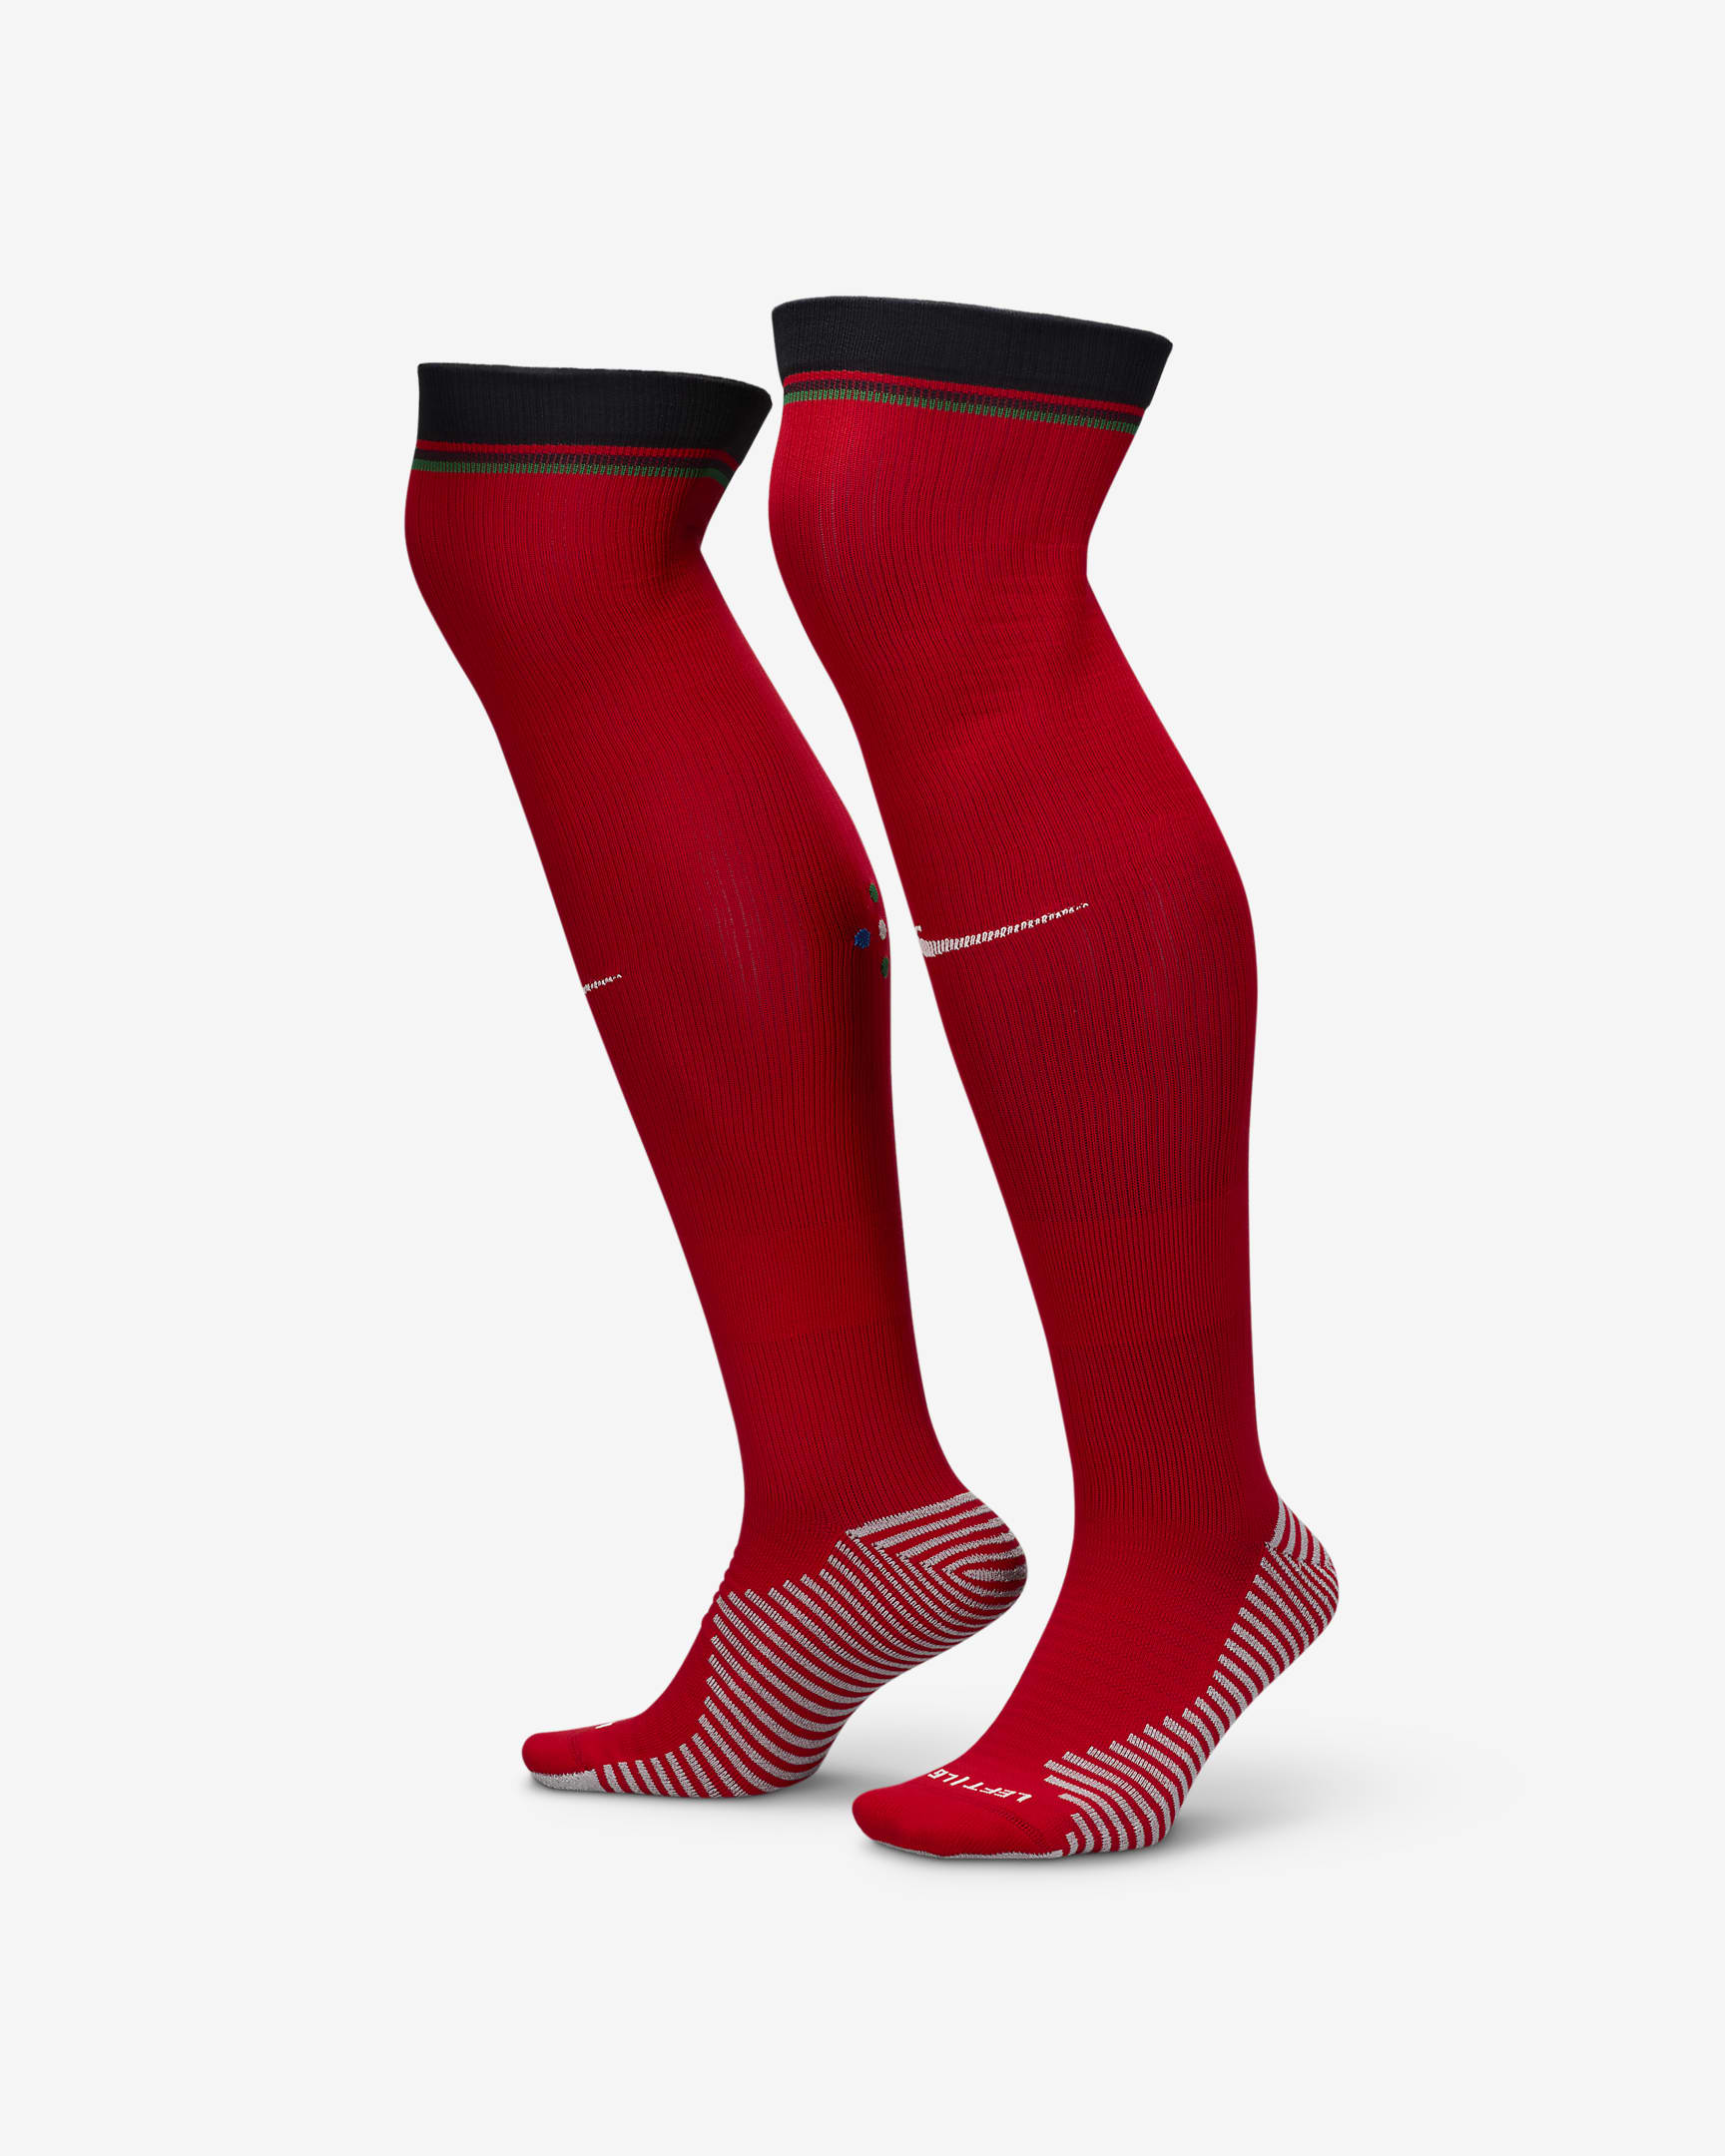 Portugal Strike Home Nike Dri-FIT Football Knee-High Socks. Nike ZA